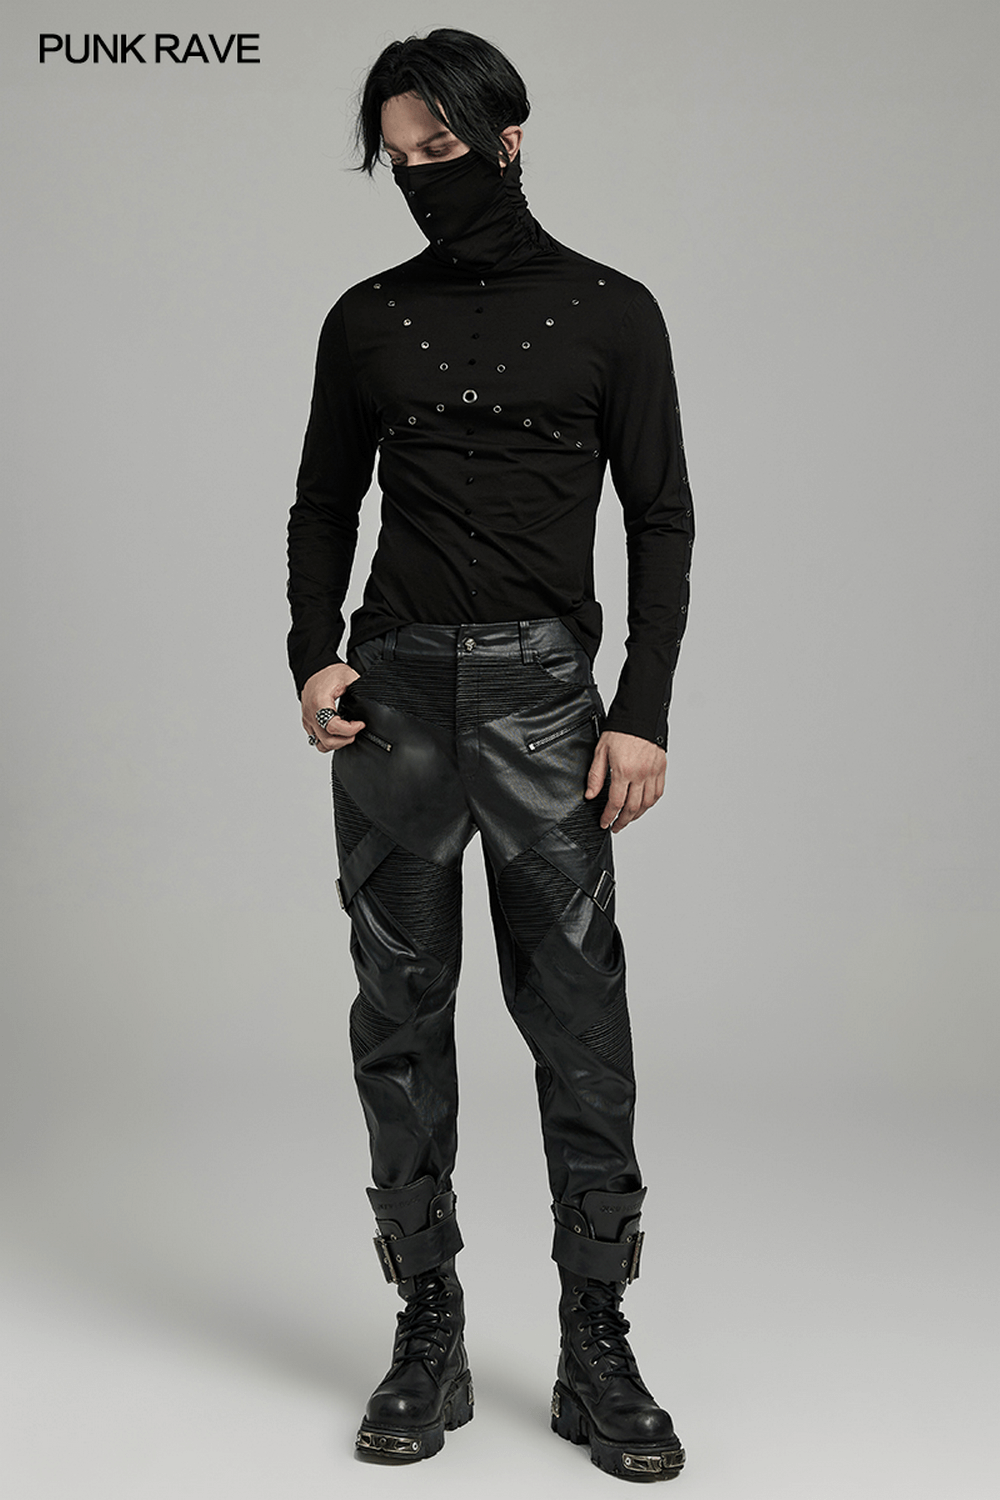 Pantalones elásticos de cuero estilo punk para hombre con cremalleras